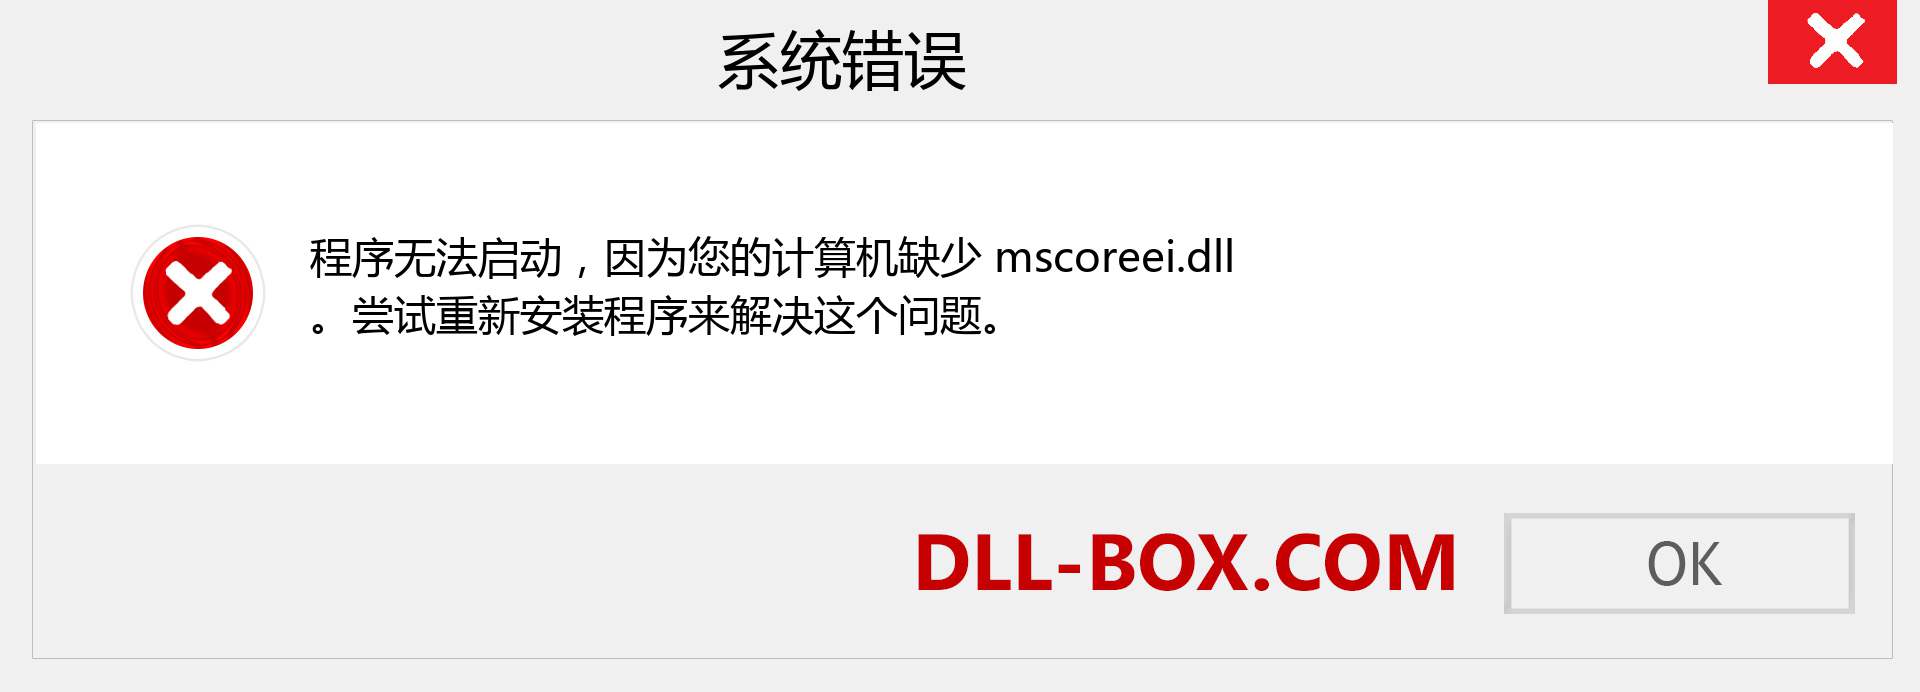 mscoreei.dll 文件丢失？。 适用于 Windows 7、8、10 的下载 - 修复 Windows、照片、图像上的 mscoreei dll 丢失错误